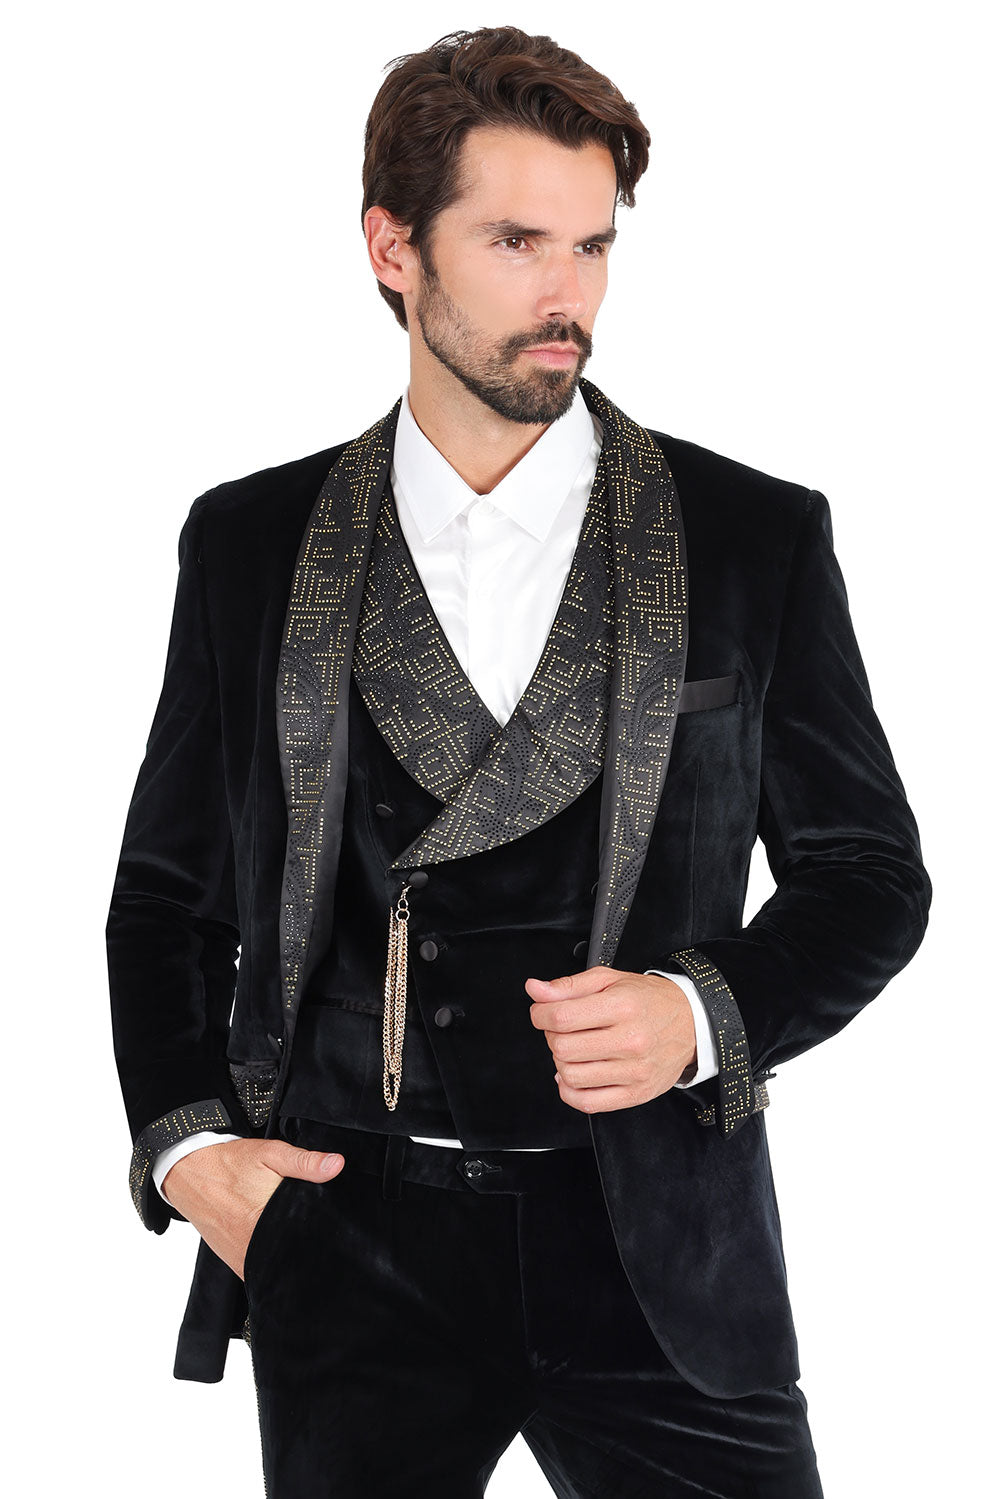 Barabas Mens Rhinestone Greek Key Luxury Dress Velvet Blazer 2BLR3 Black Gold